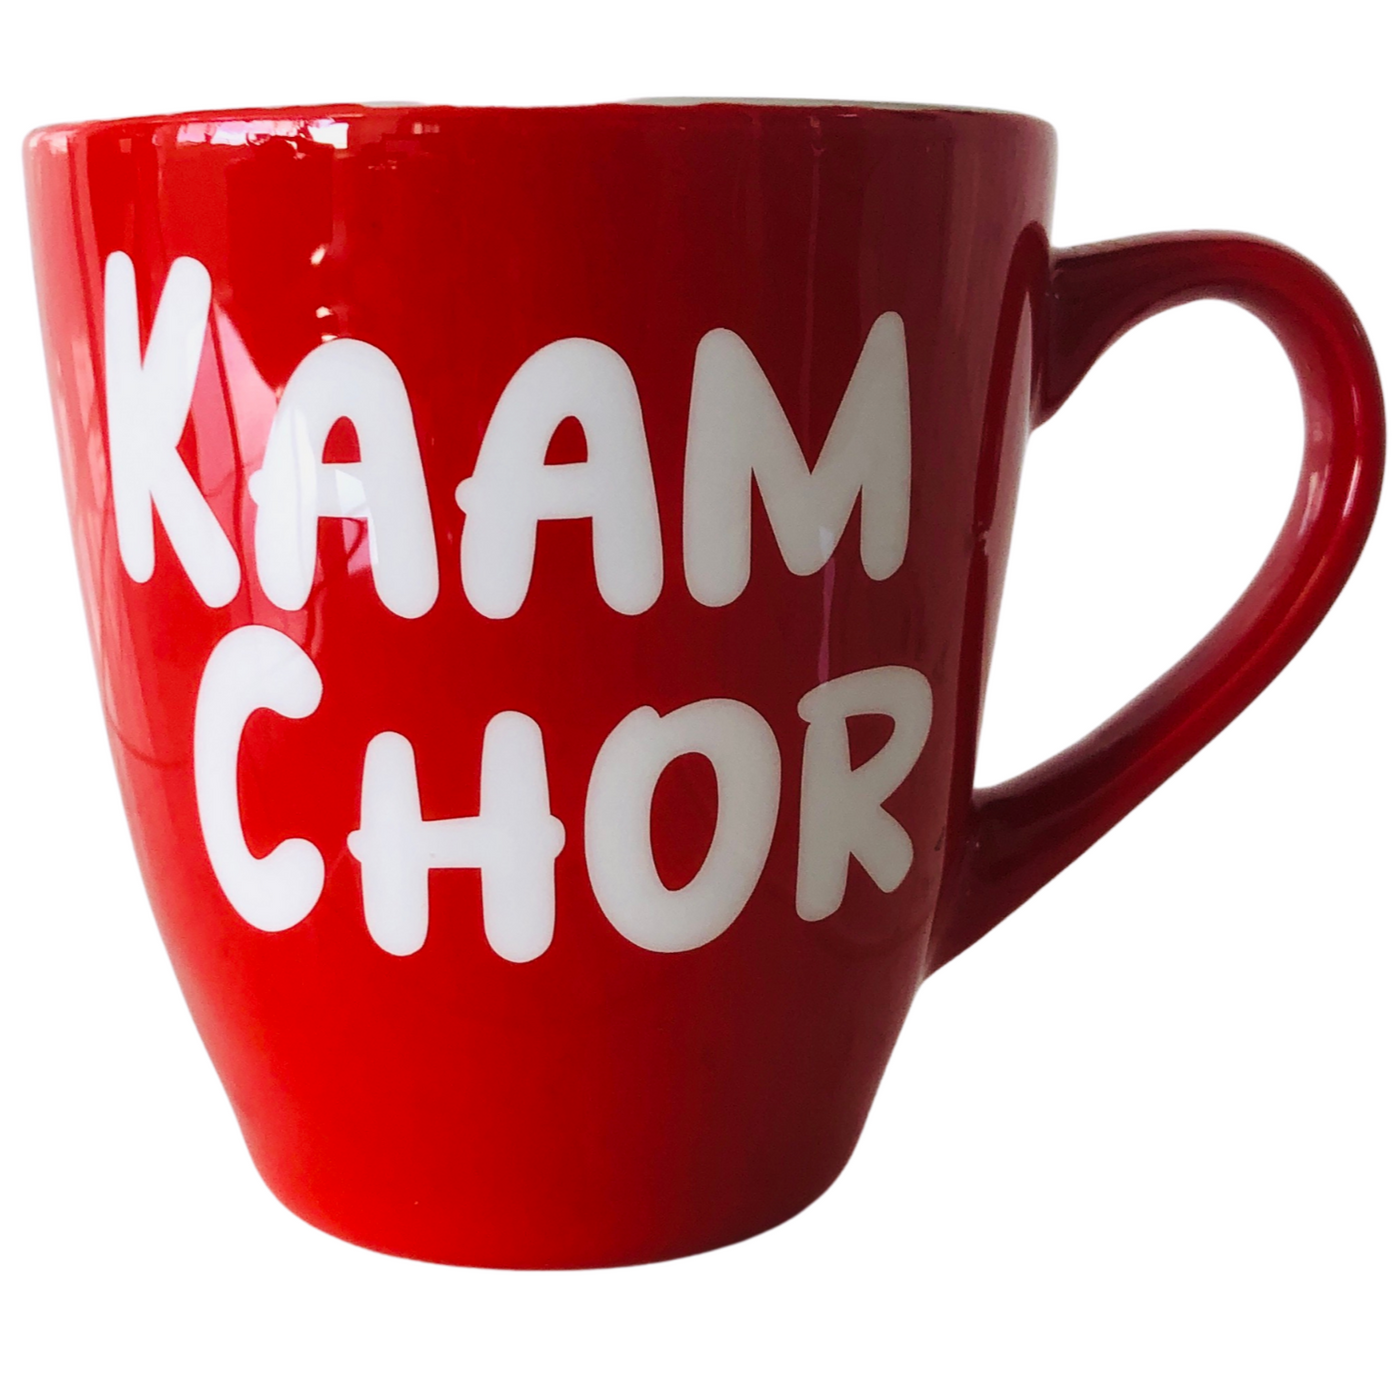 Kaam Chor Mug